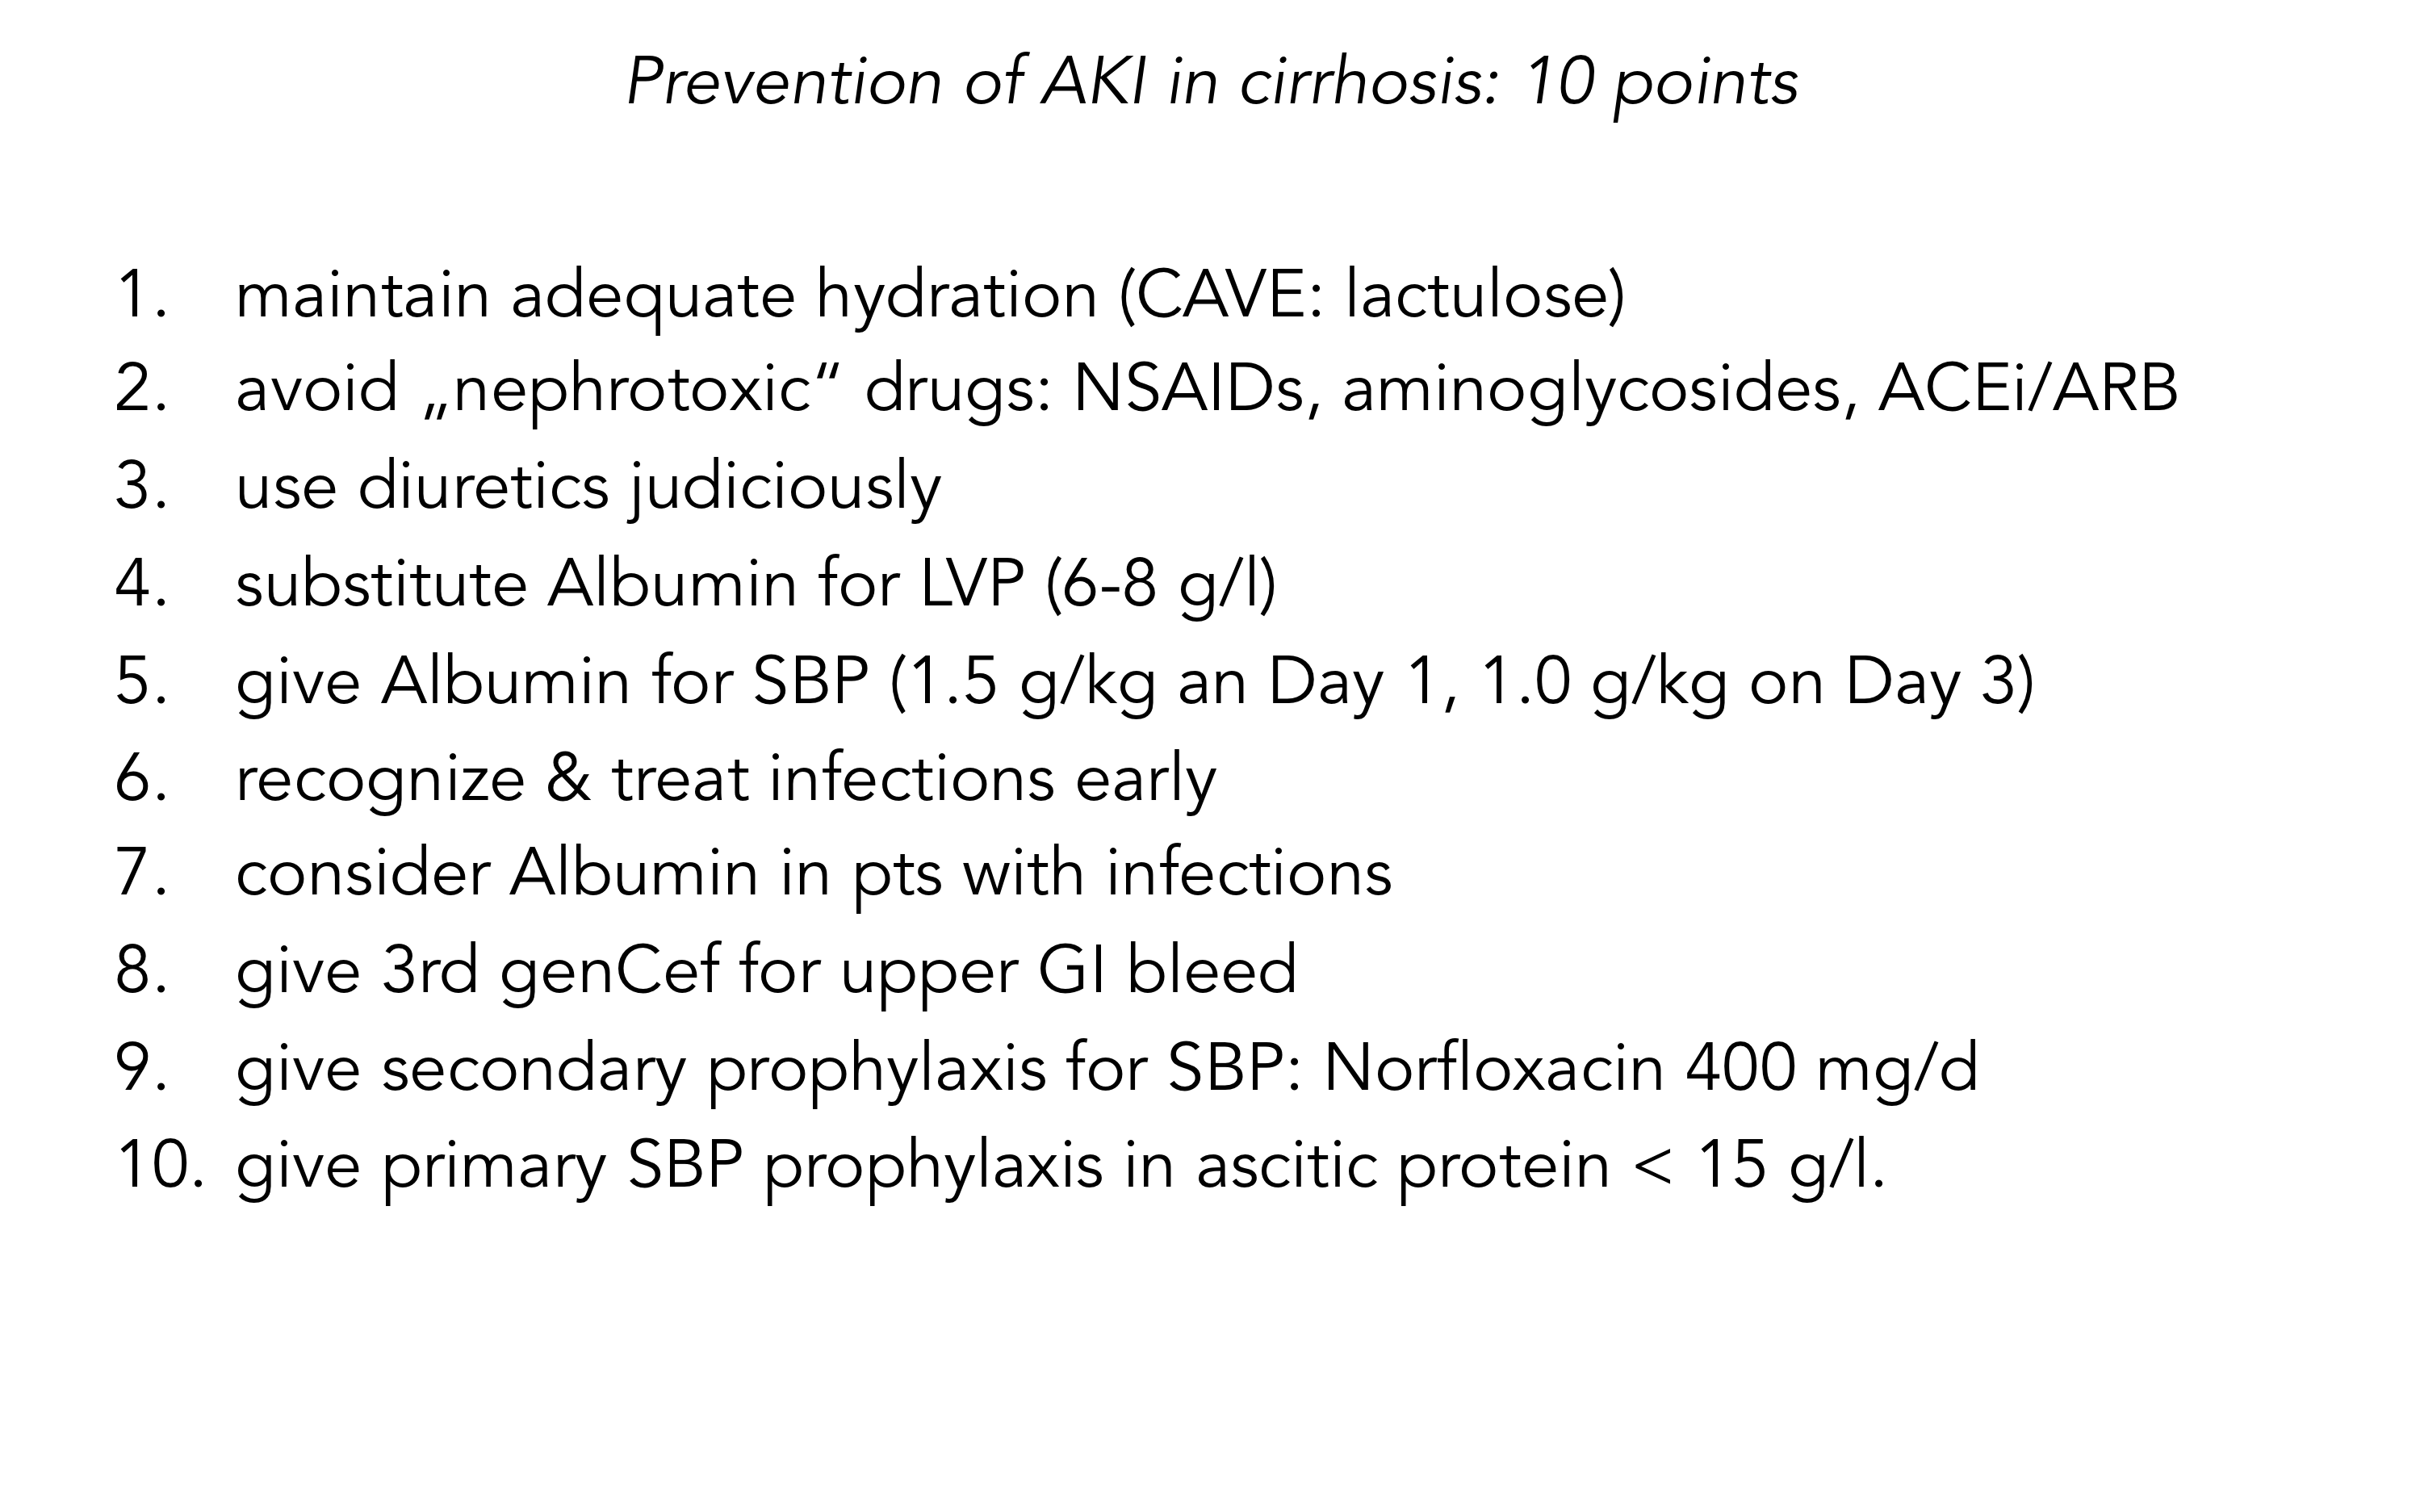 preventing AKI in cirrhosis.png